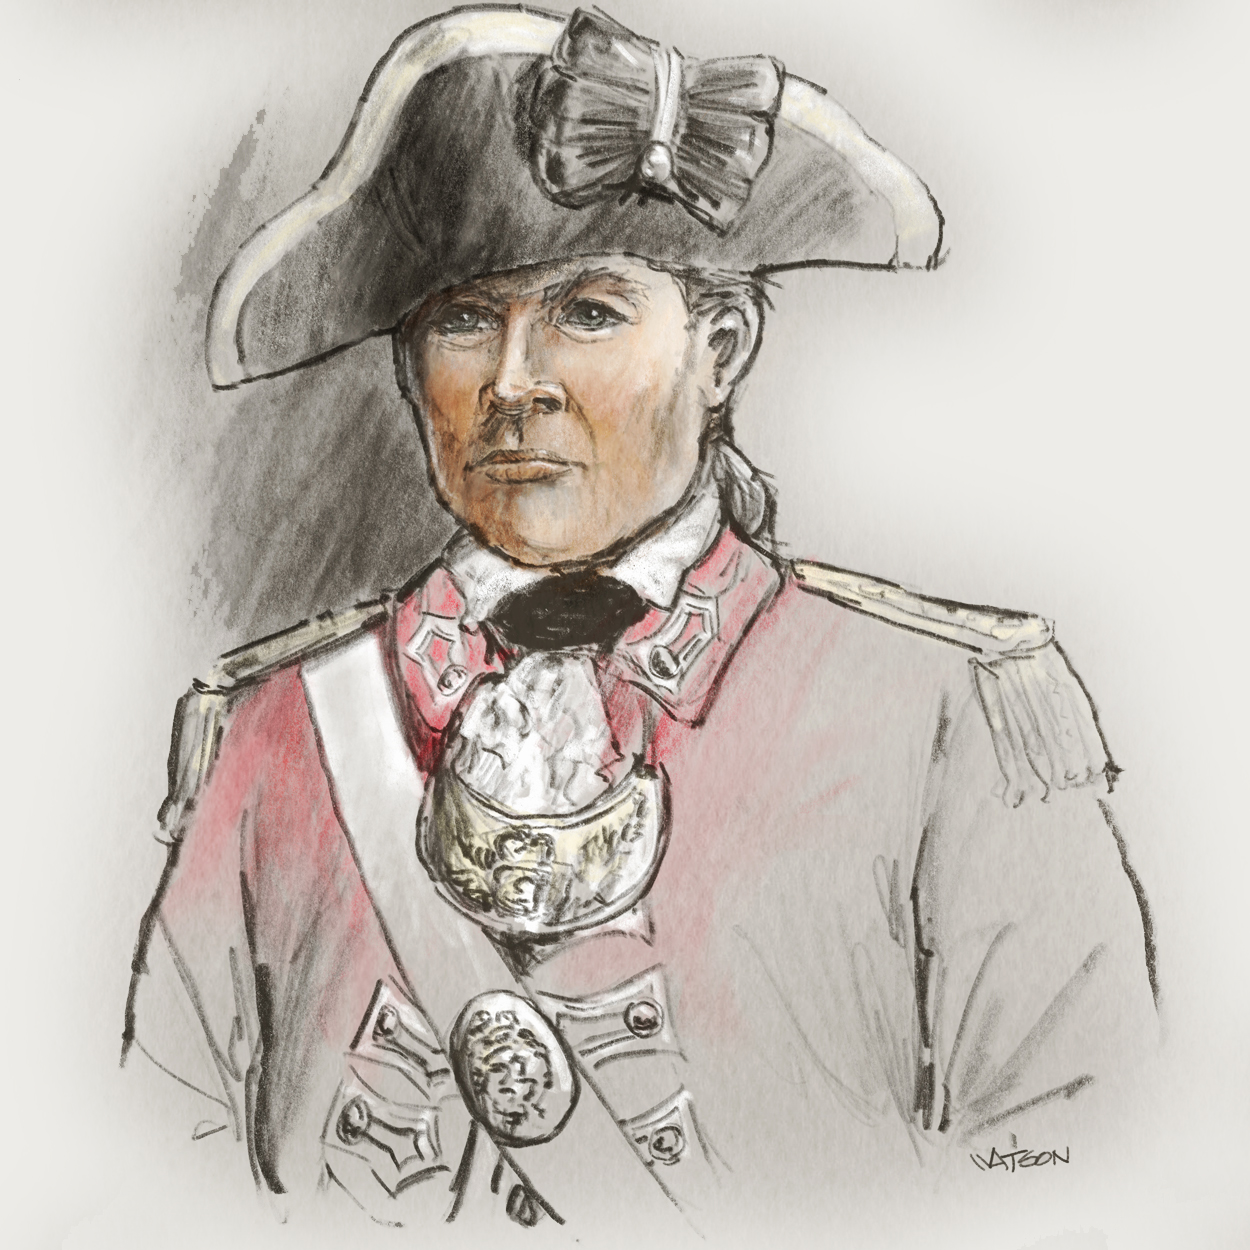 Drawn portrait of James Webster